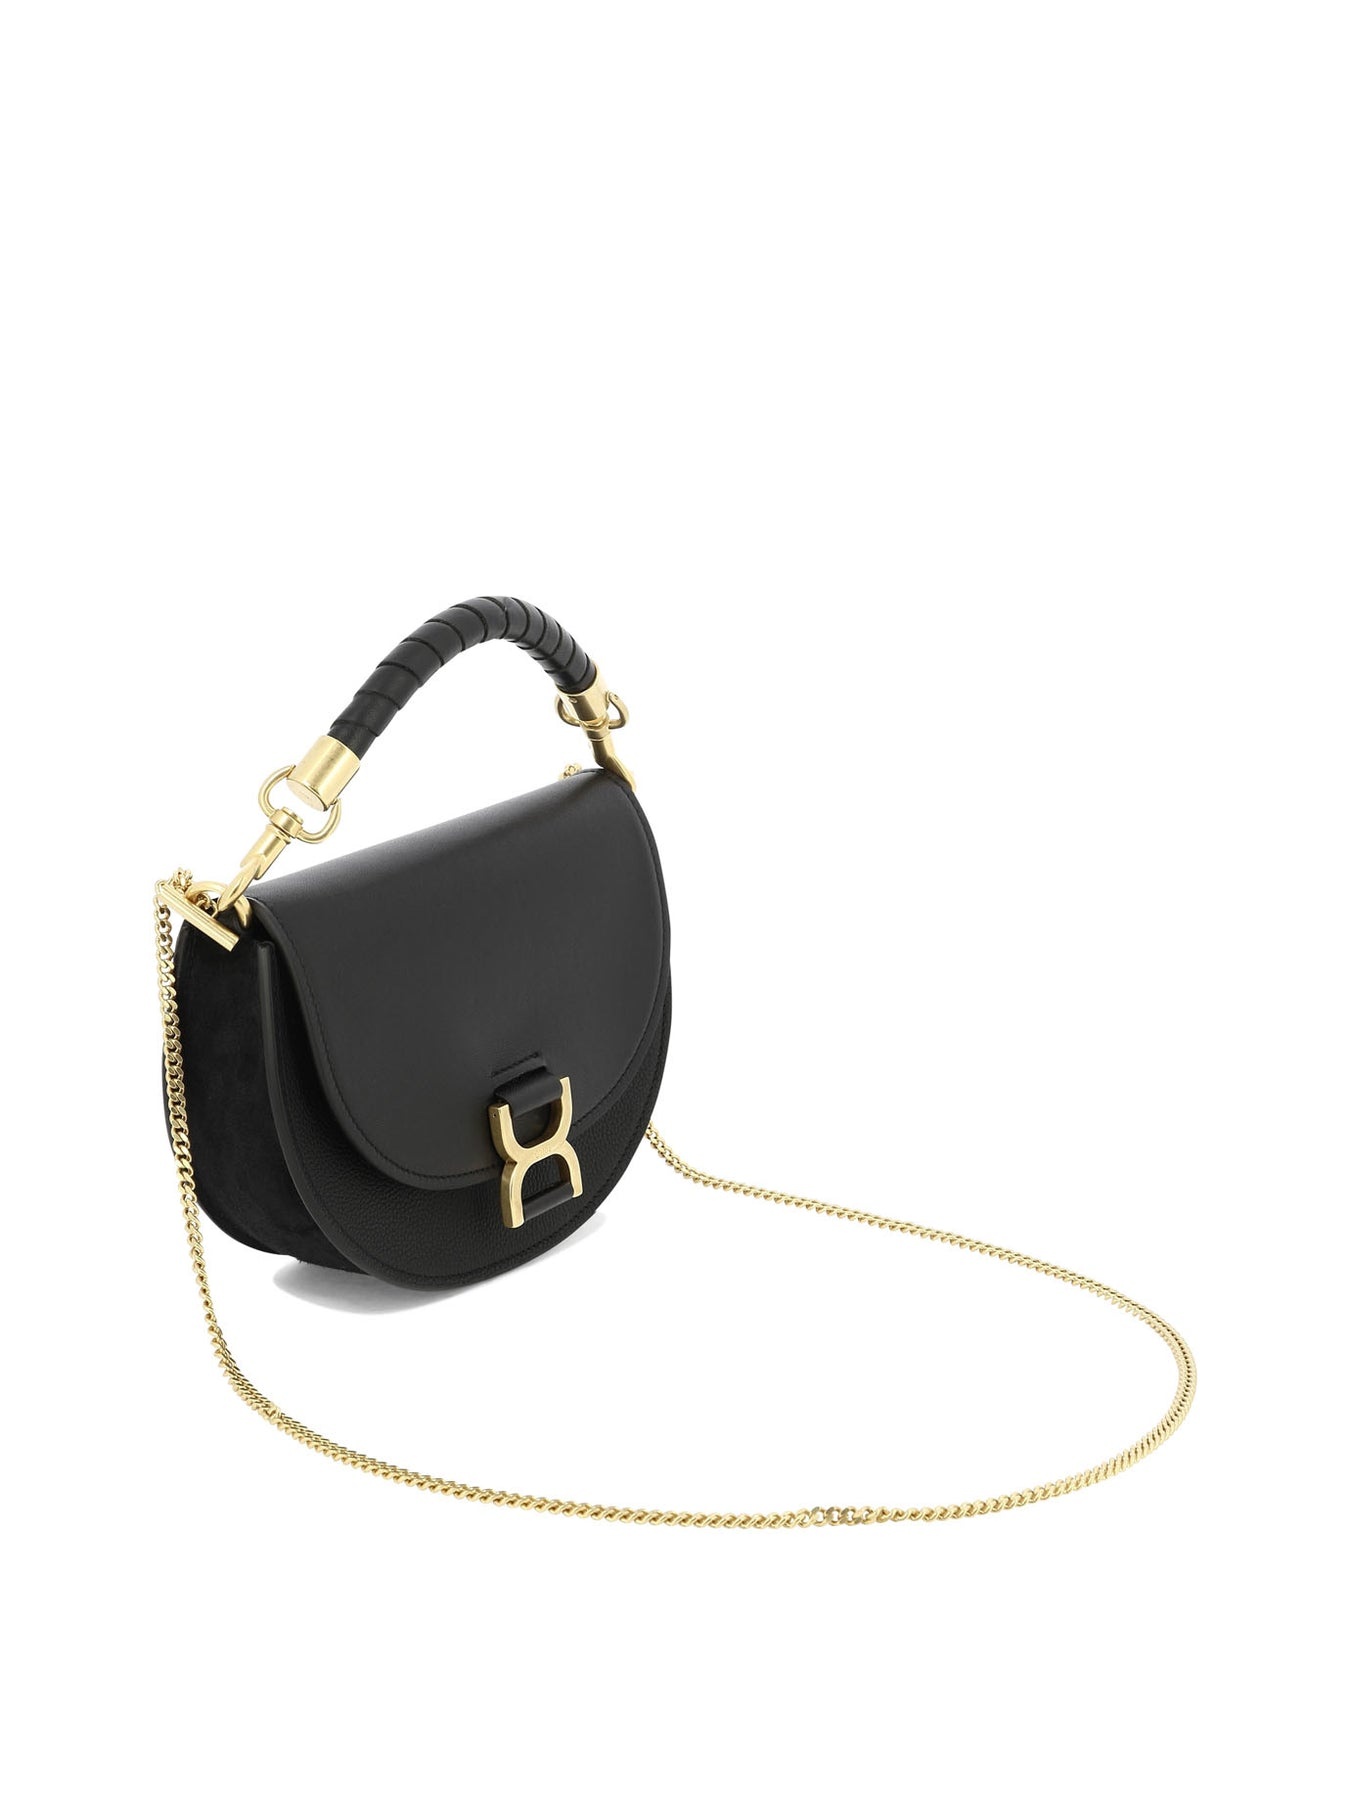 Marcie Handbags Black - 2